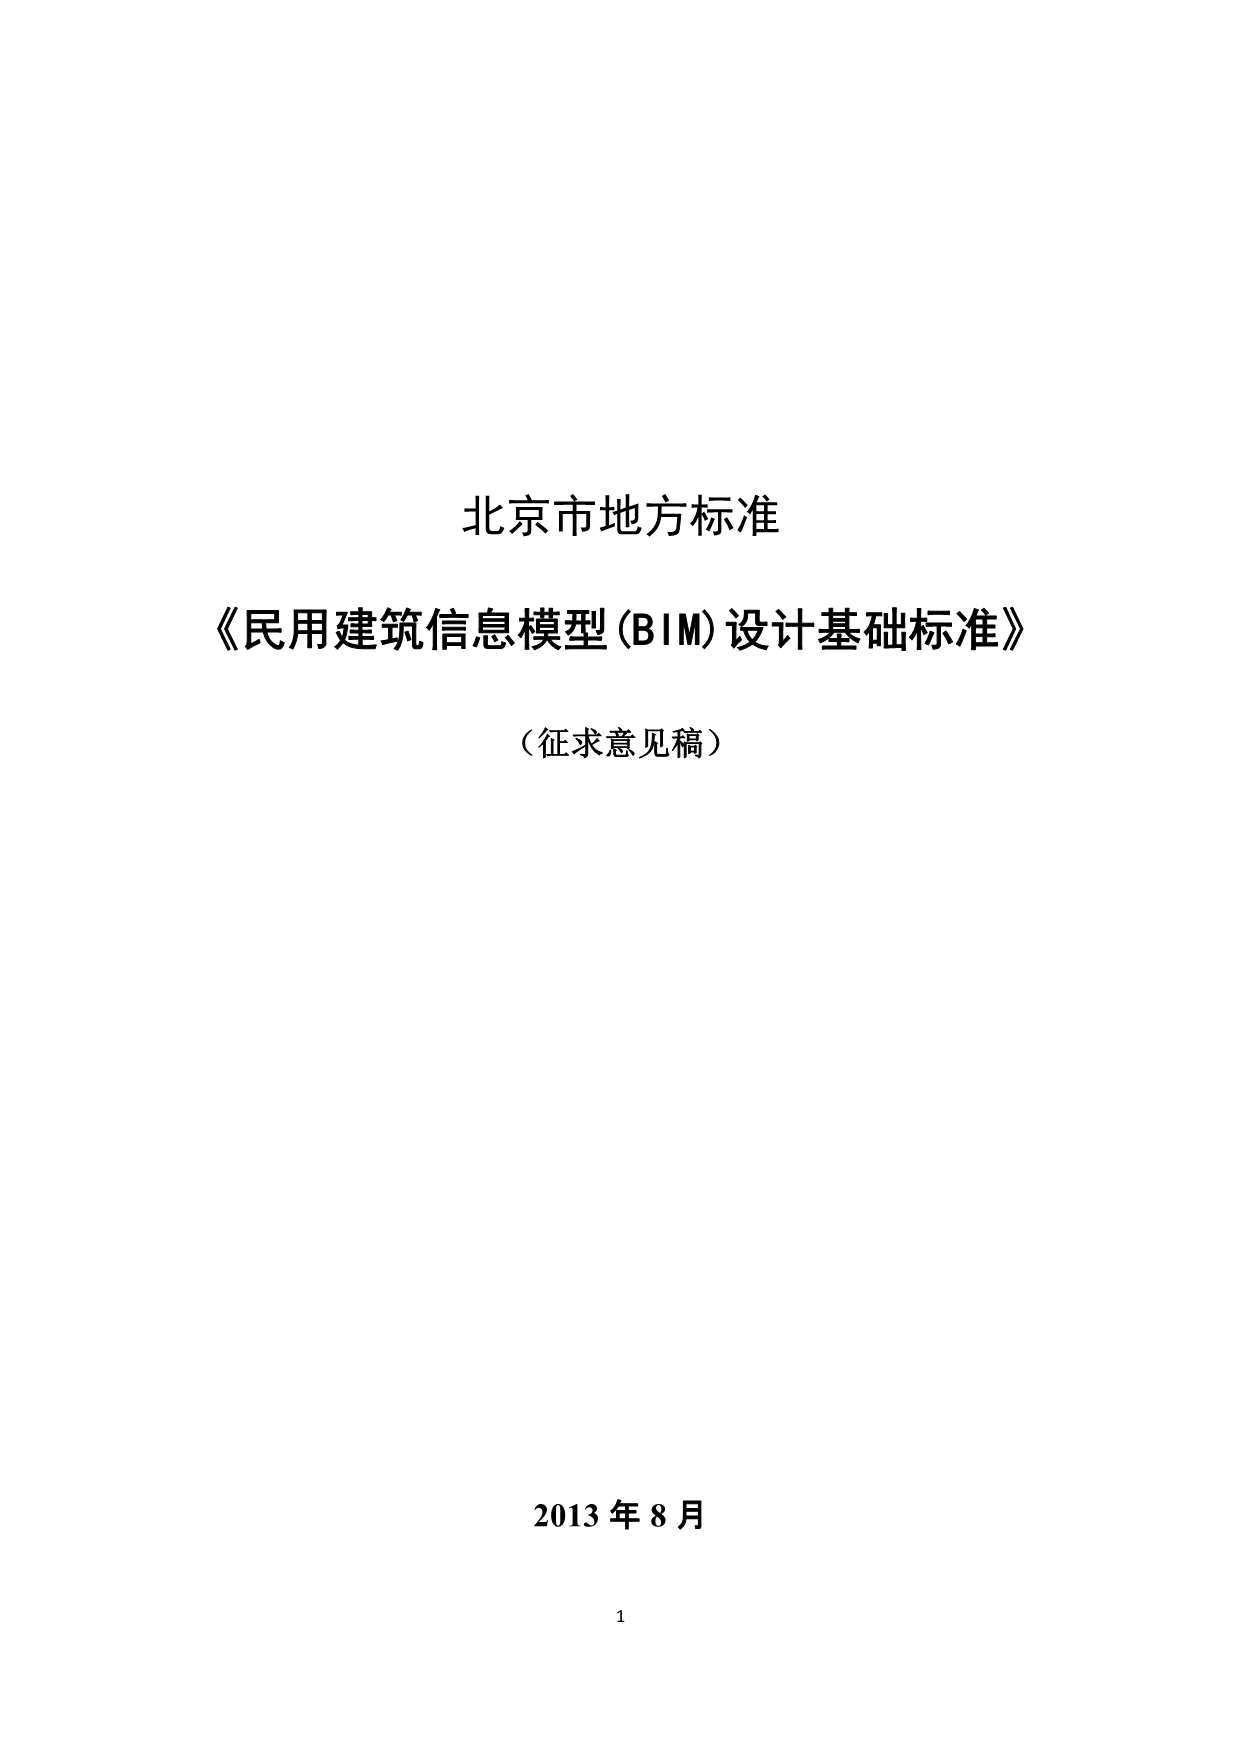 北京市地方标准民用BIM设计基础标准(意见征集稿)